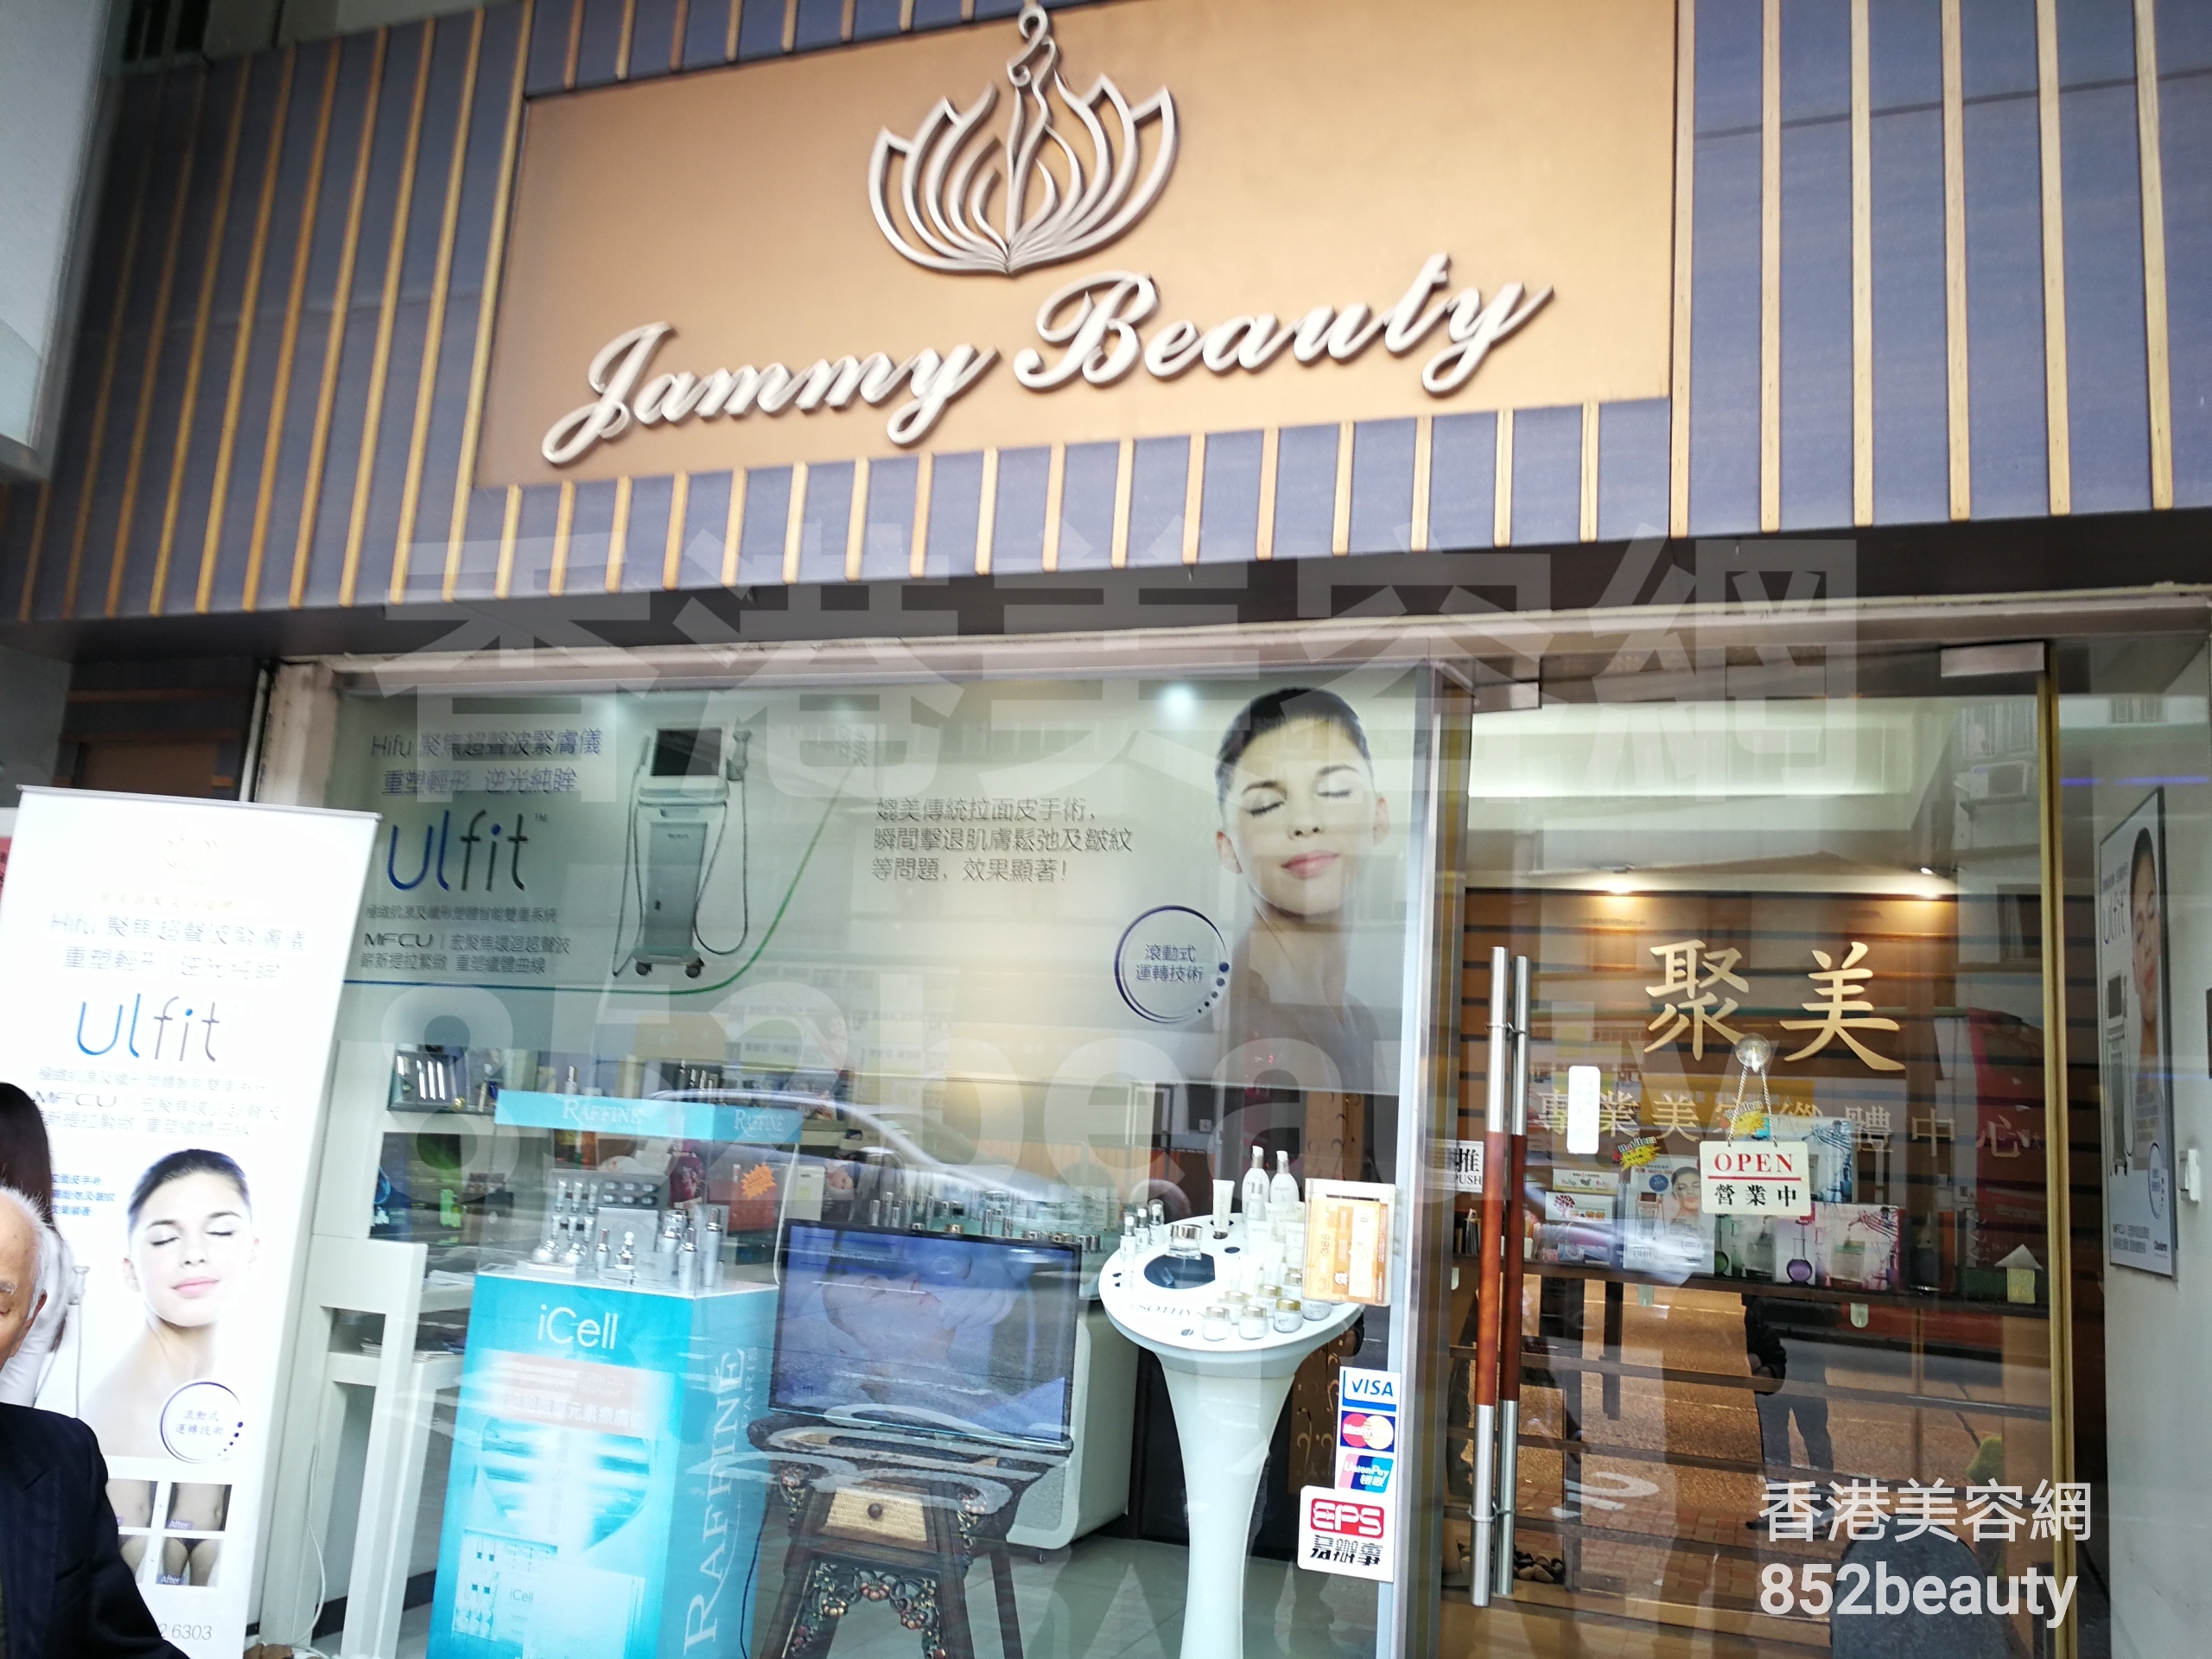 美容院: Jammy beauty house 聚美專業美容纖體中心